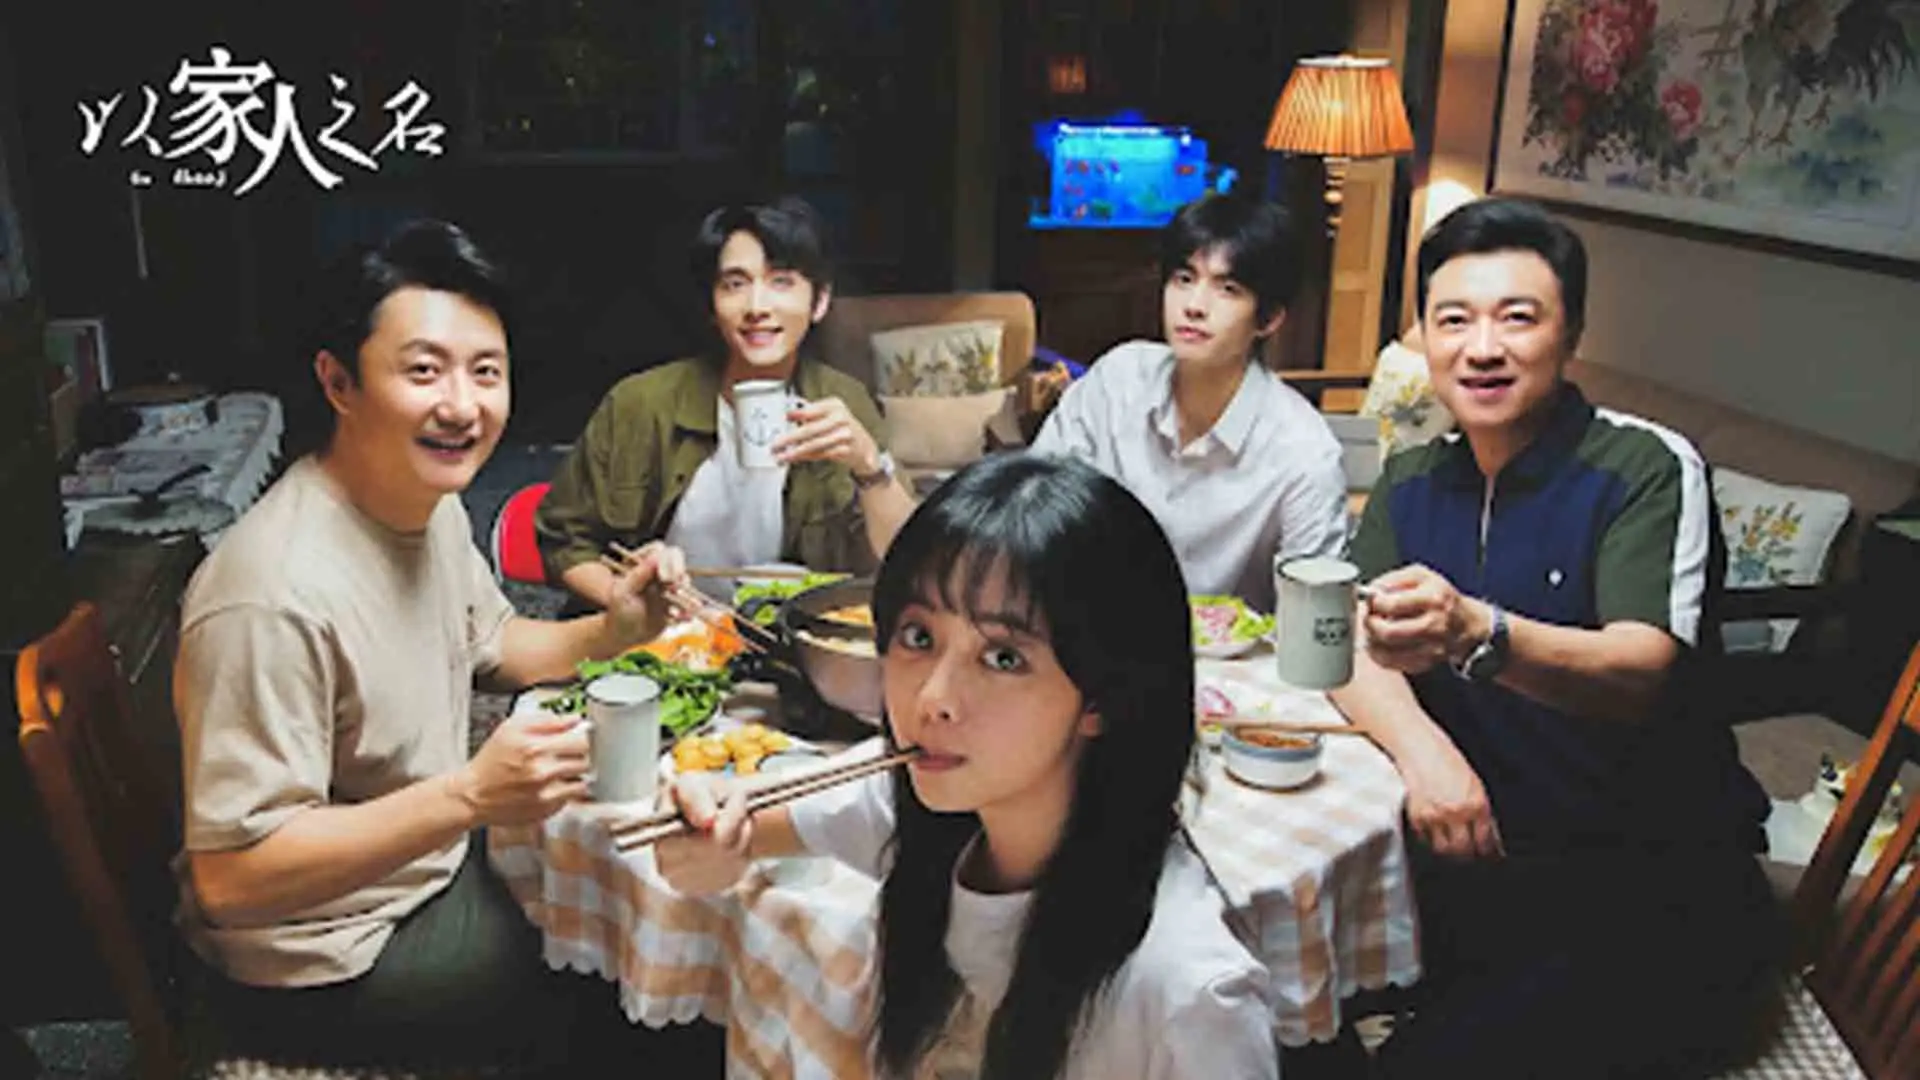 بازیگران اصلی سریال Go Ahead دور میز غذا